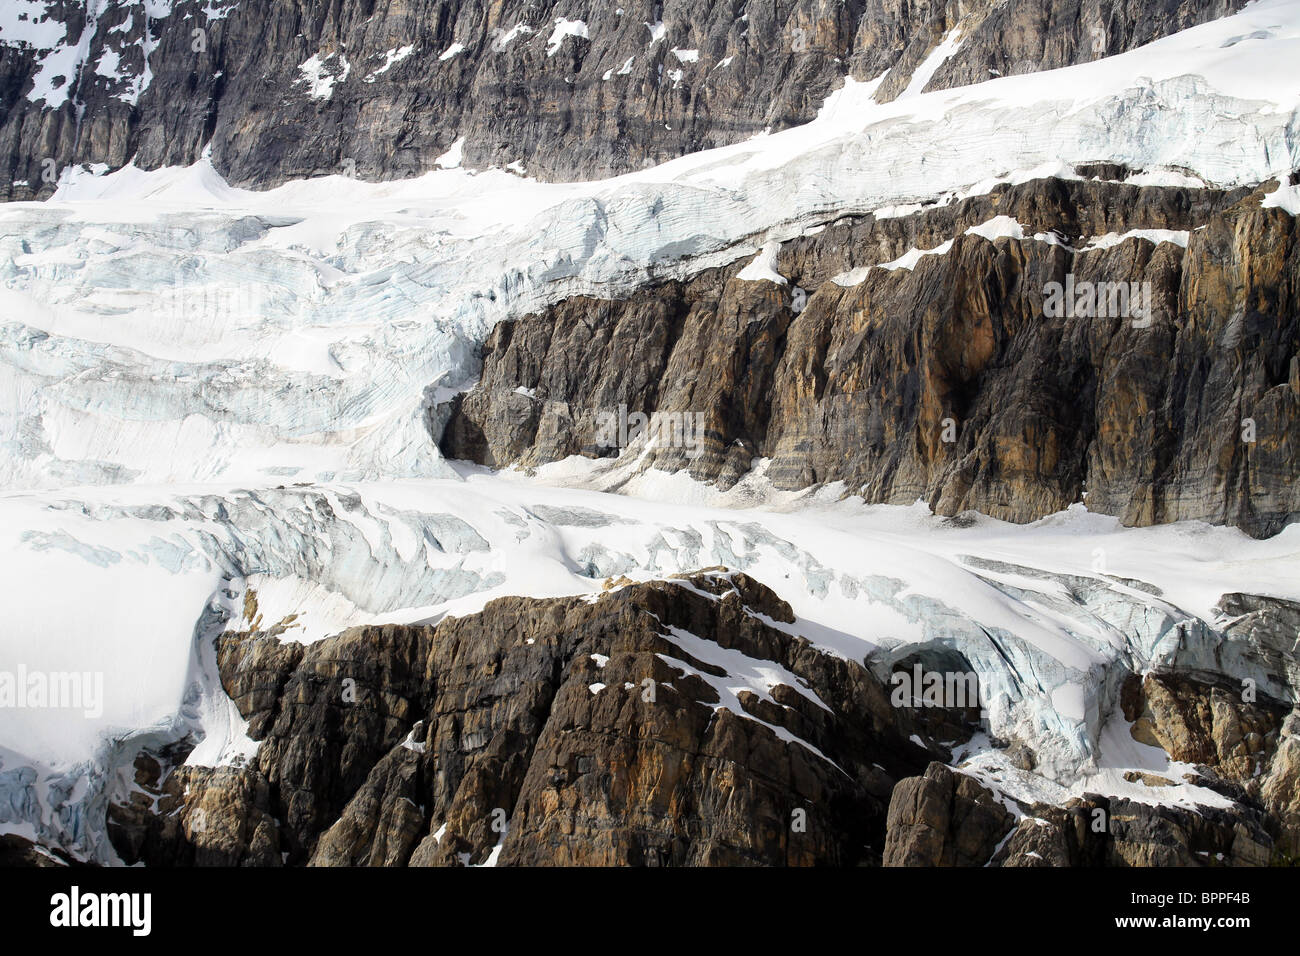 Gletscher, Columbia Eisfeldern in Jasper Nationalpark, Alberta, Kanada. Eis und Schnee auf felsigen Berg Simsen. Stockfoto